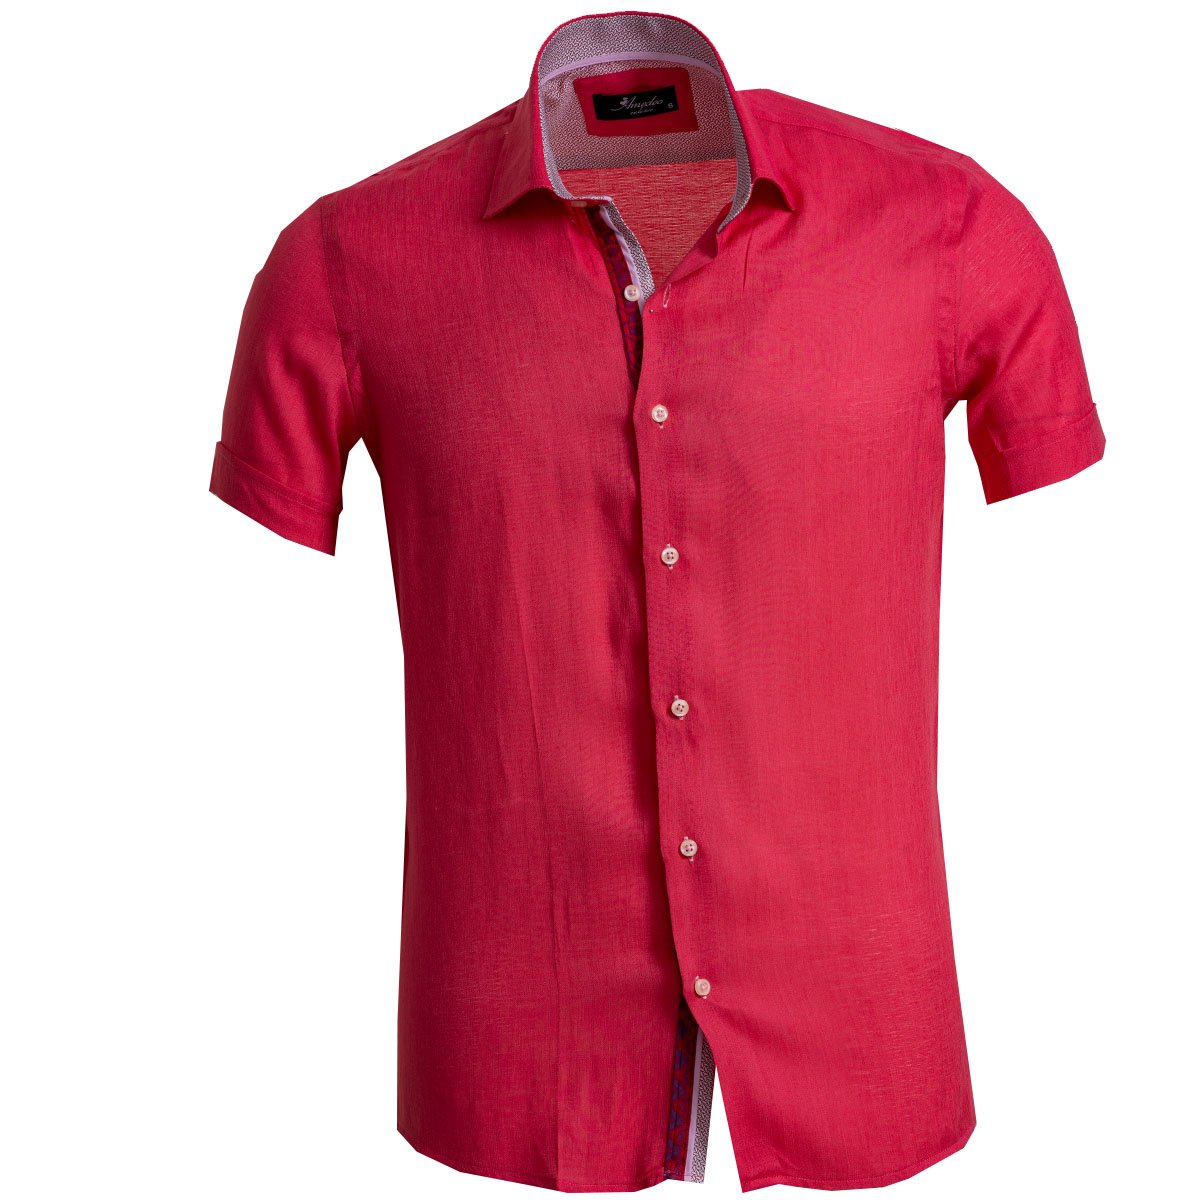 mens red button down dress shirt